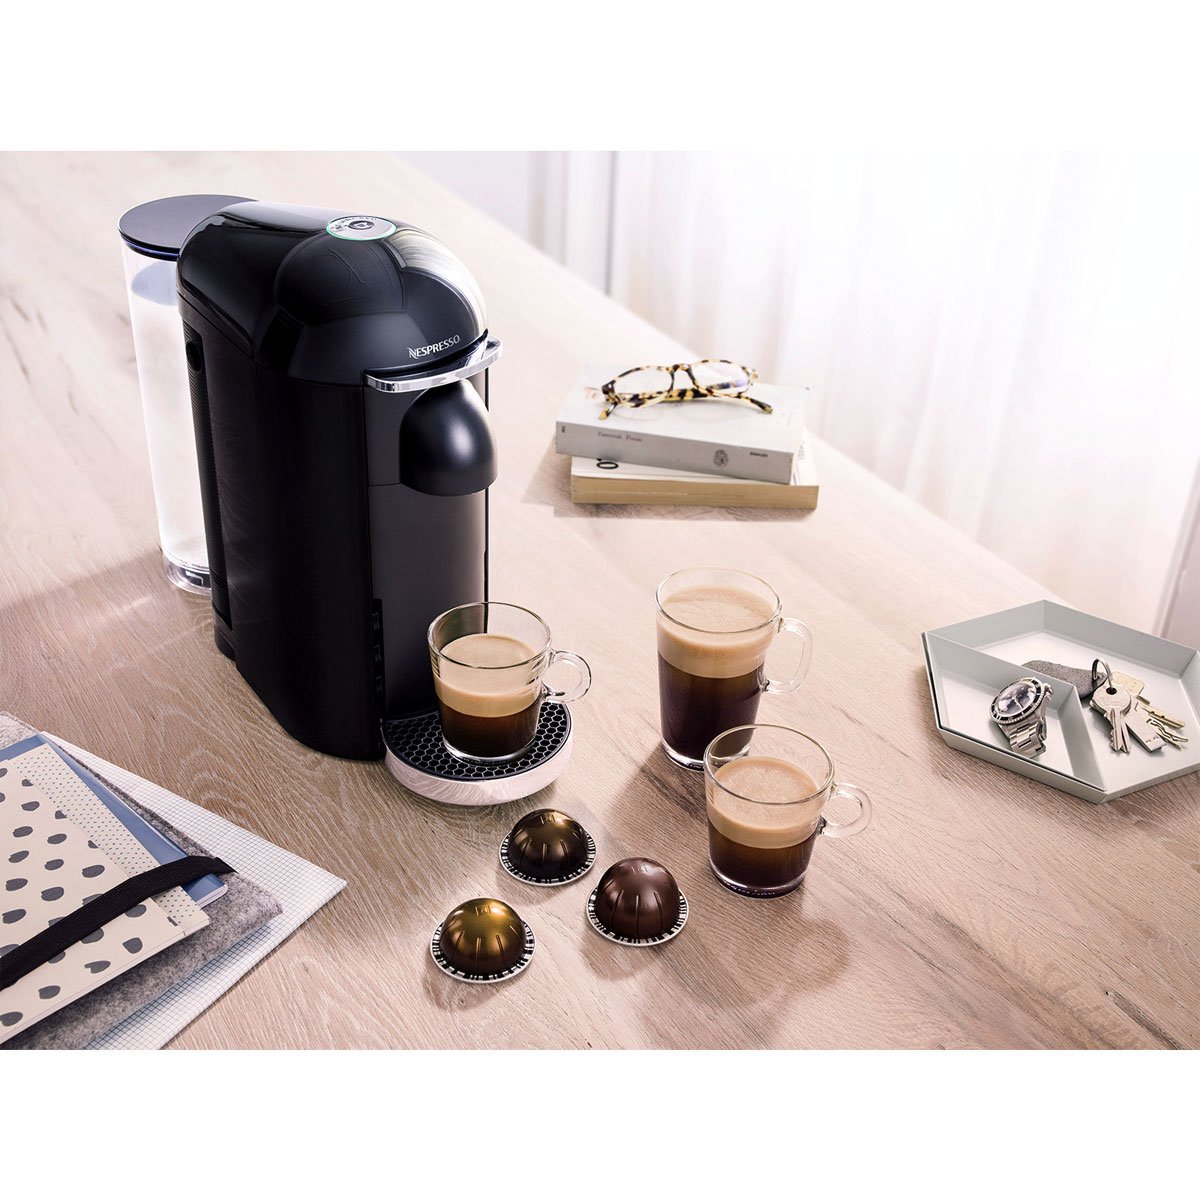 Máquina de Café Vertuoline Gcb2 Black Nespresso